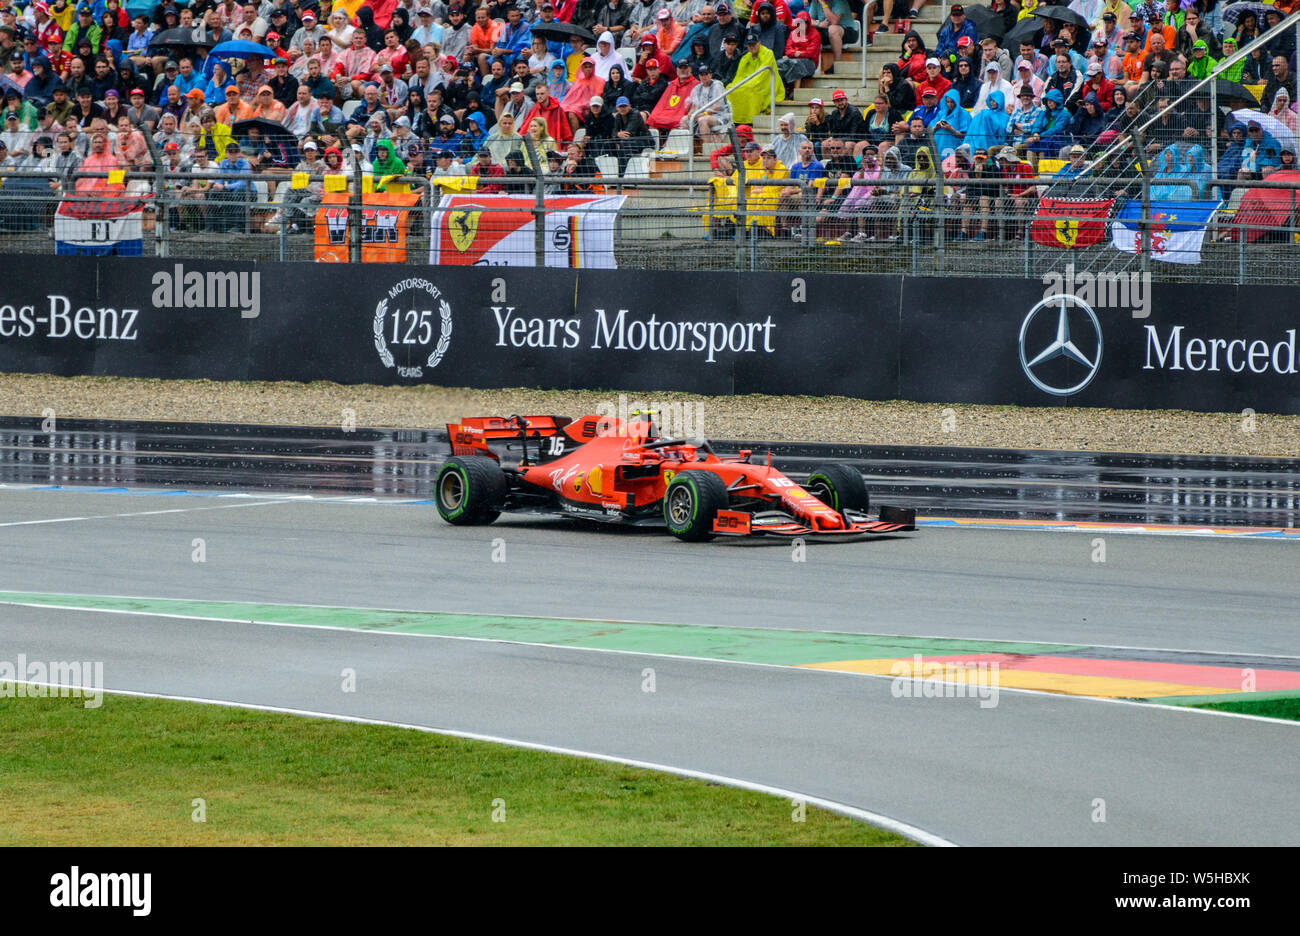 Formula 1 GP de Alemania en Hockenheim el 28 de julio de 2019: Ferrari, Charles Leclerc Foto de stock